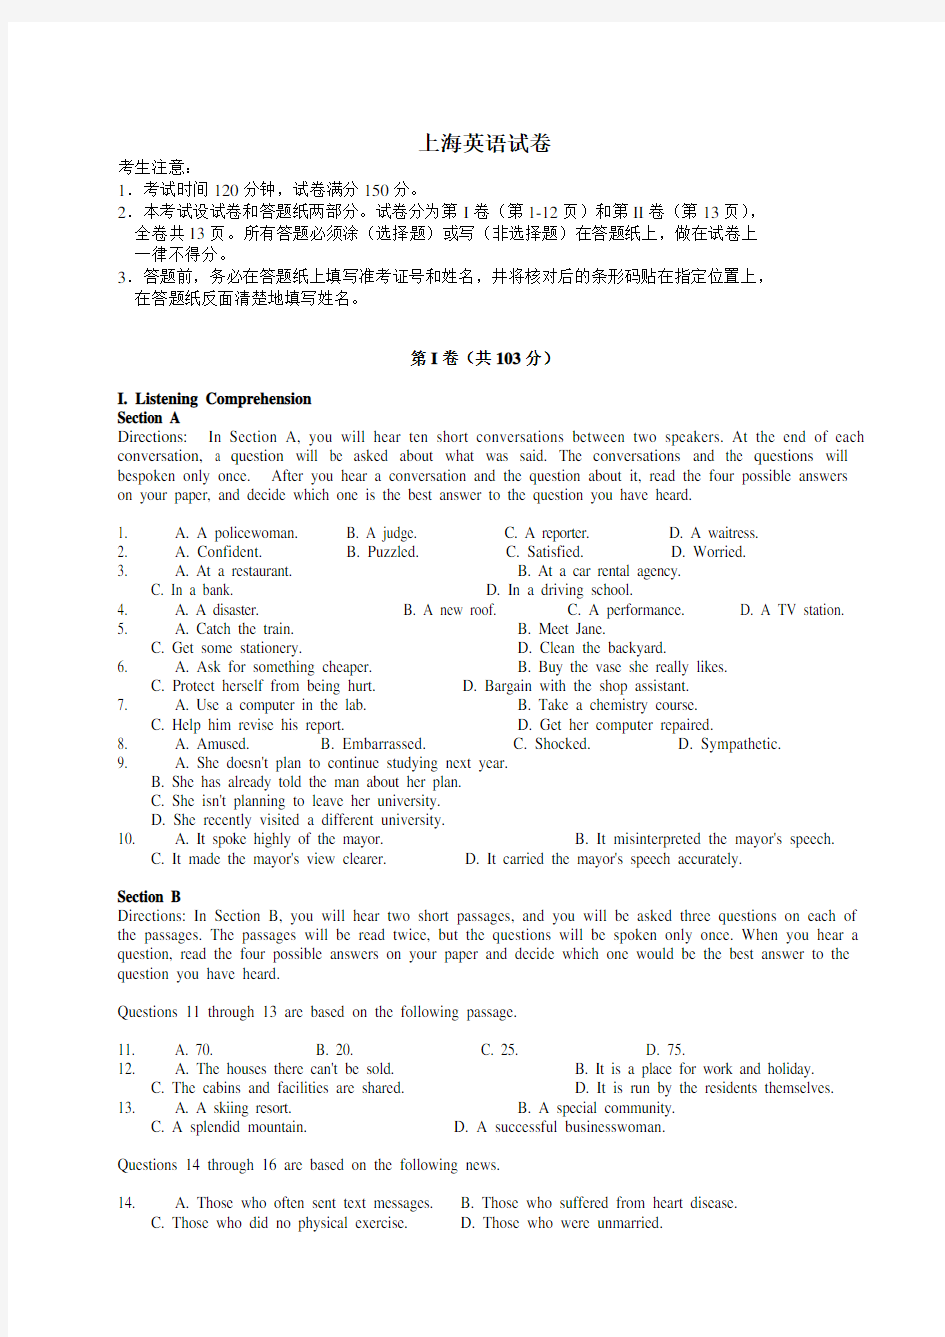 2014年高考真题(上海市)英语卷答案解析